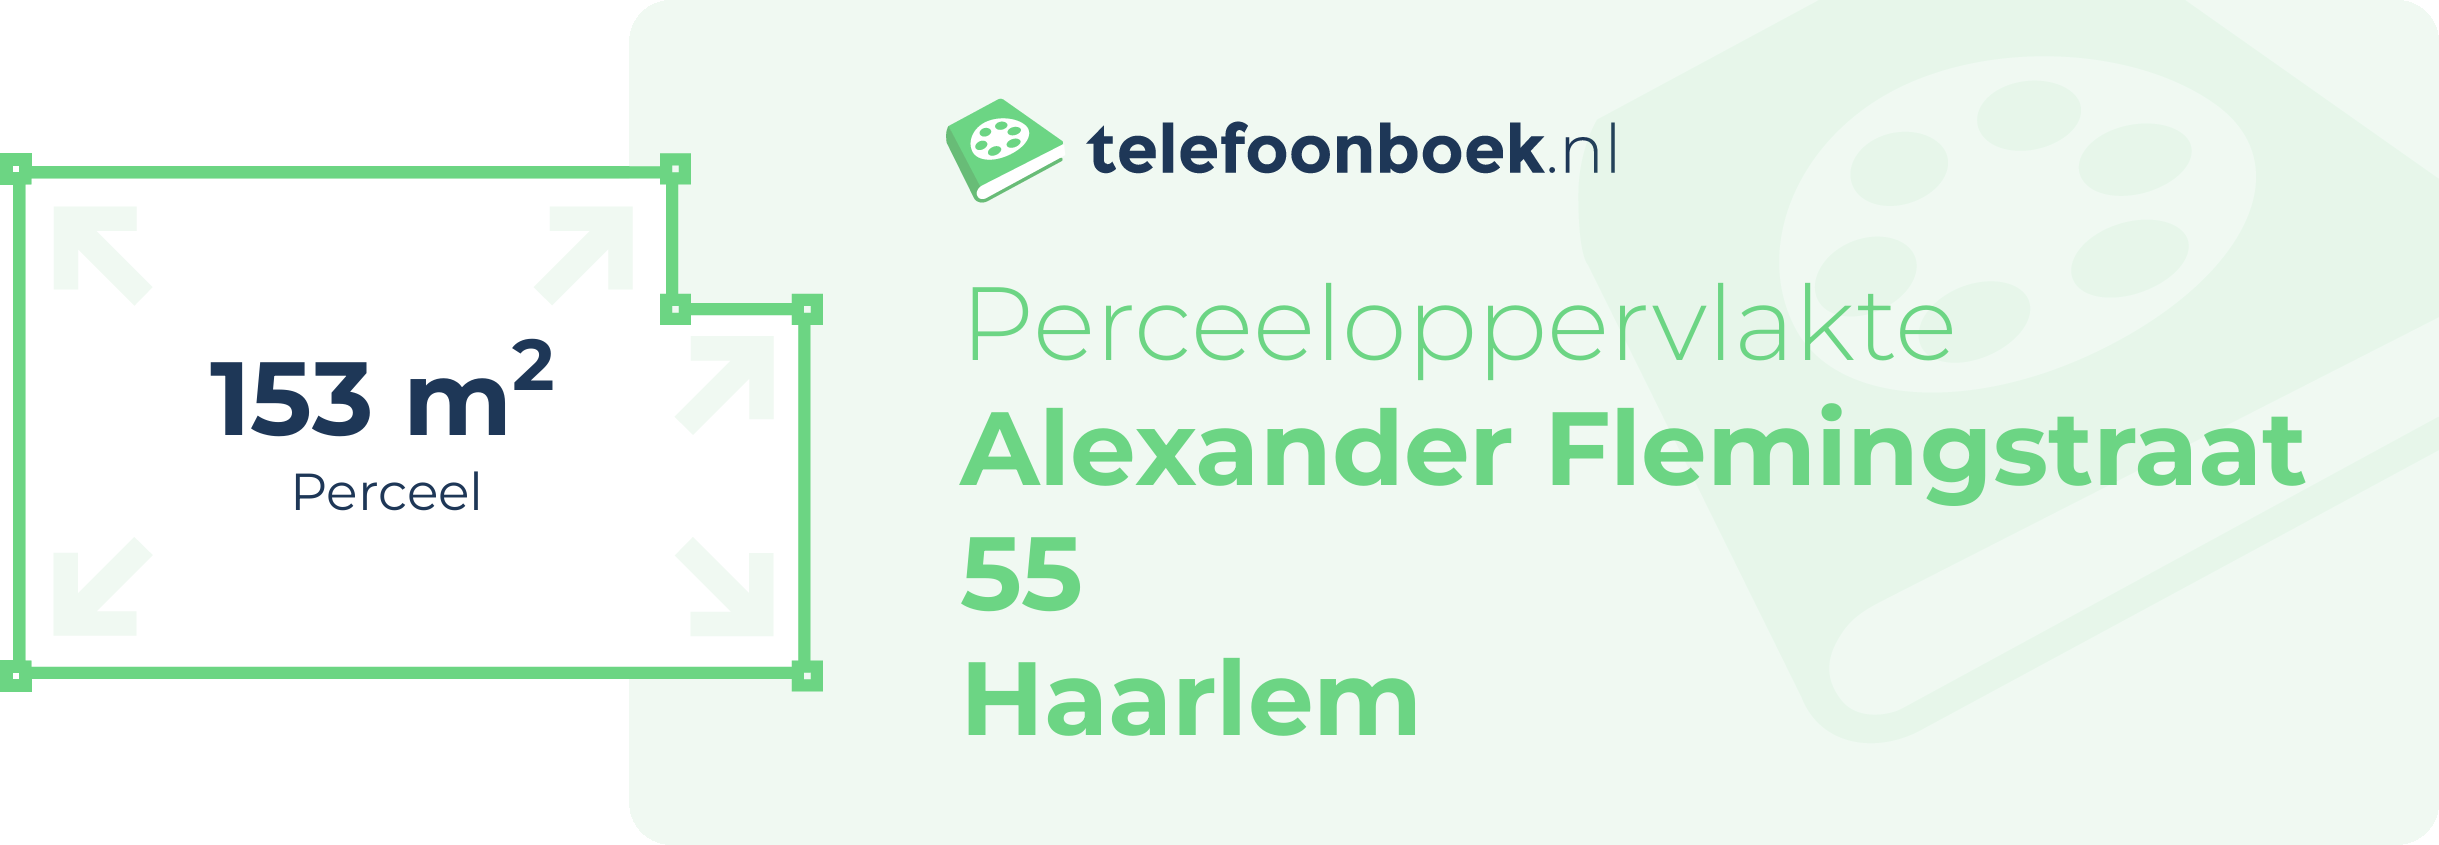 Perceeloppervlakte Alexander Flemingstraat 55 Haarlem